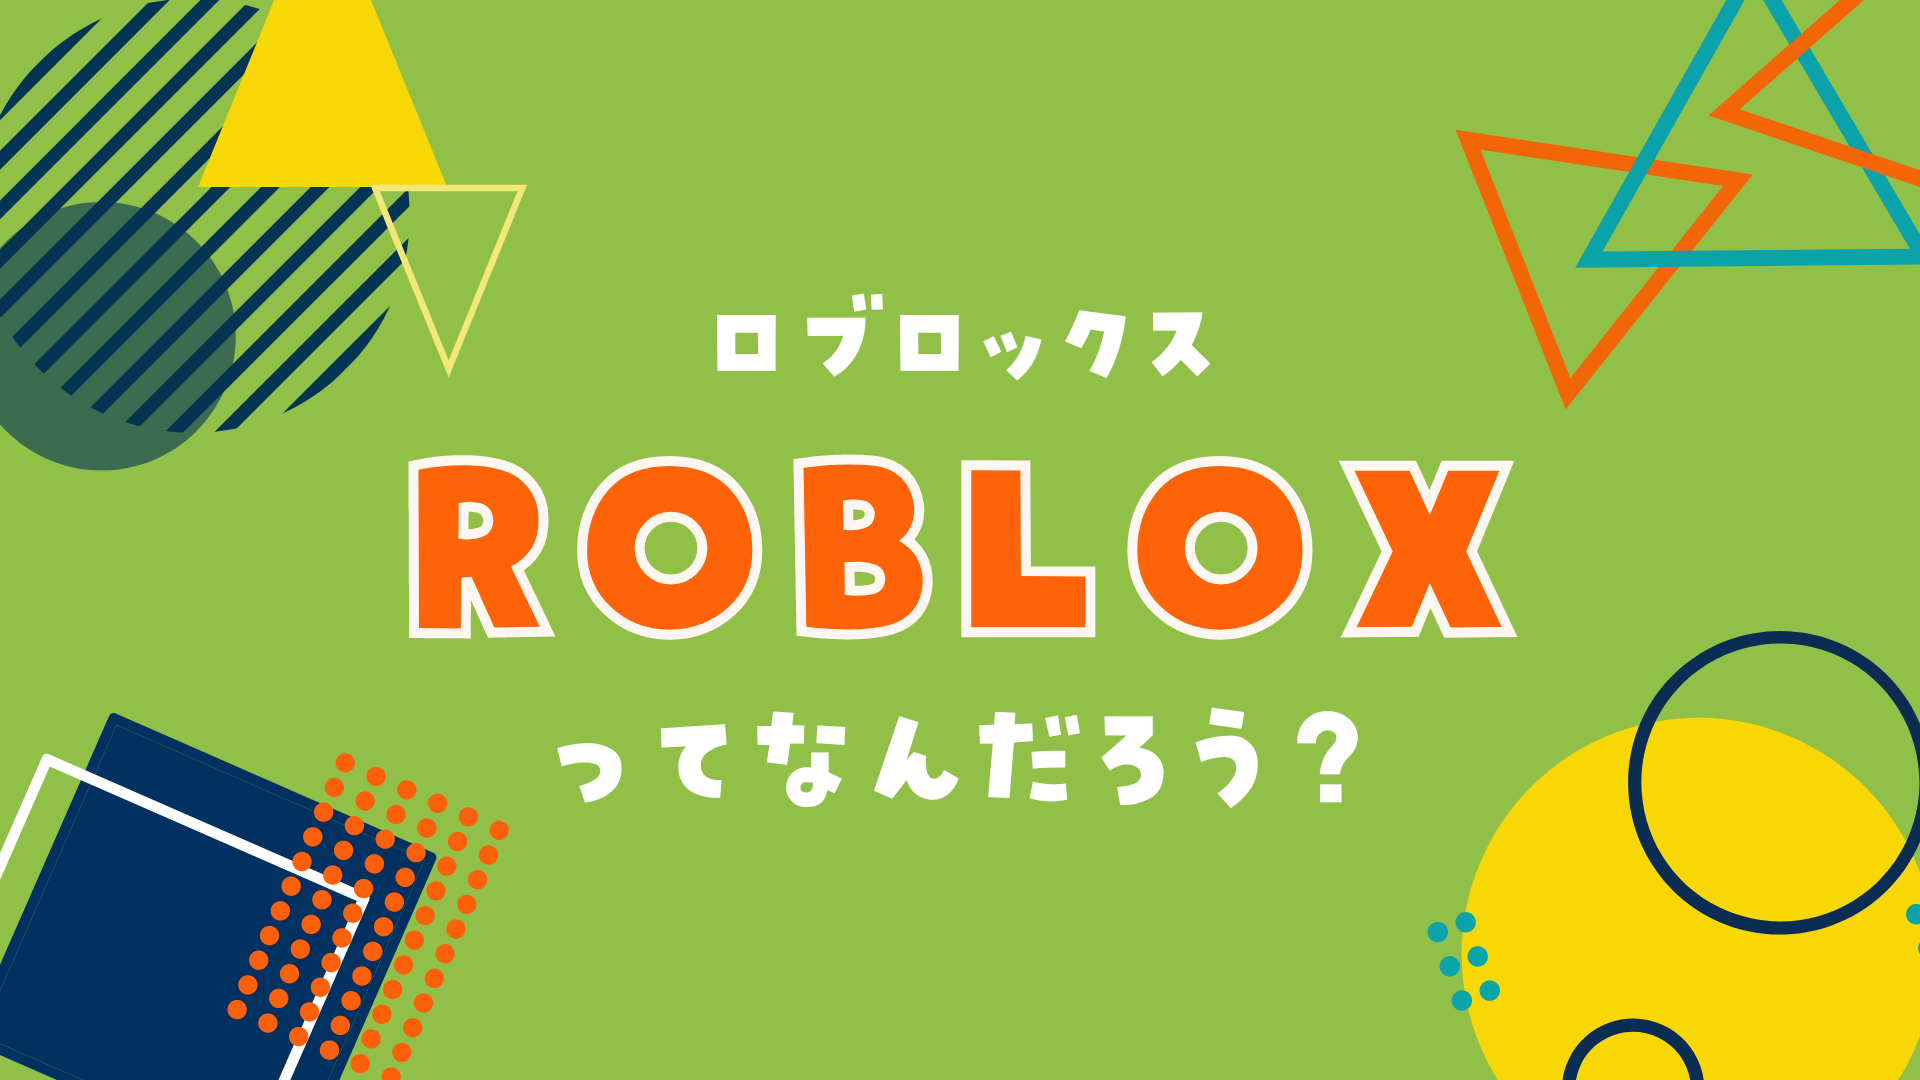 ROBLOX（ロブロックス）ってなんだろう？